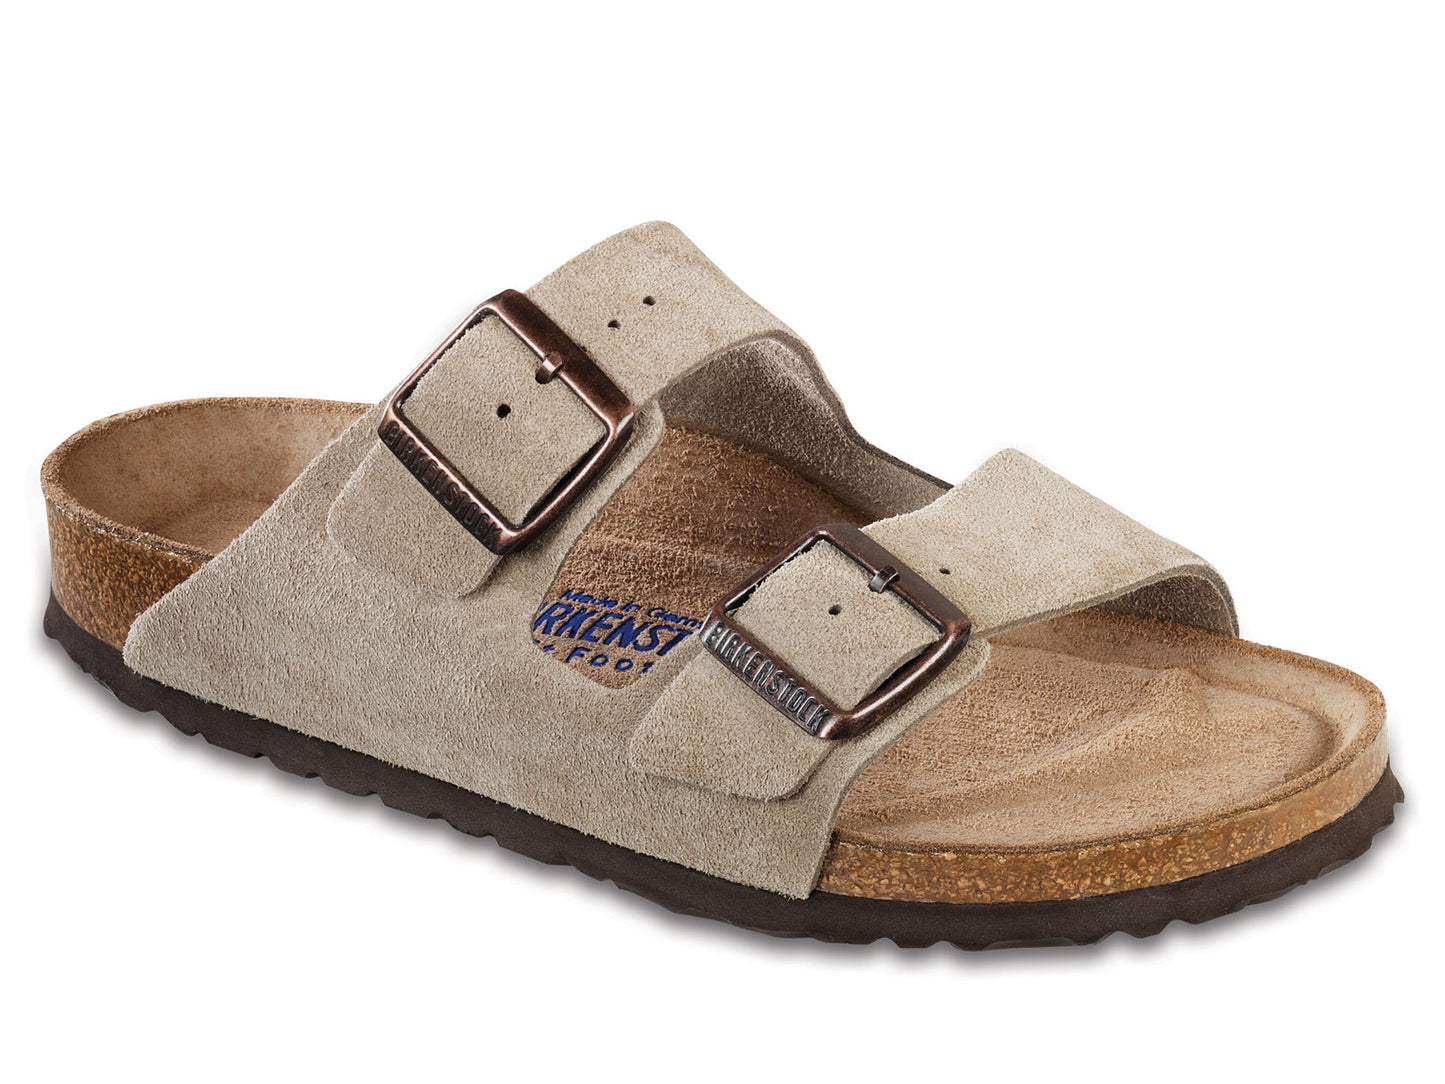 Unisex Arizona Soft Footbed Suede Leather Slides